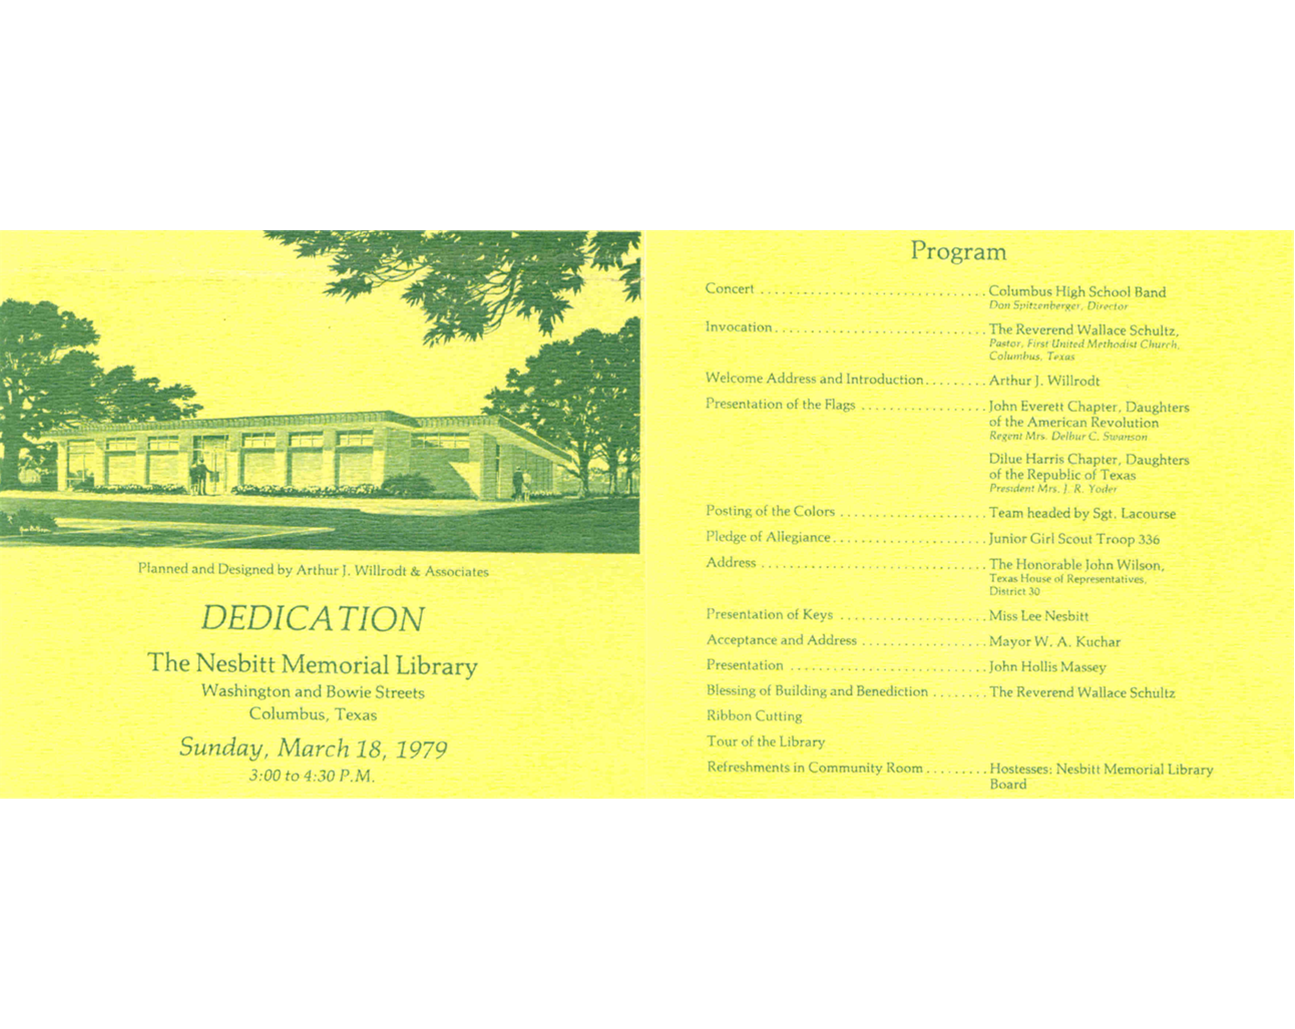  Program for the dedication of the Nesbitt Memorial Library, March 18, 1979